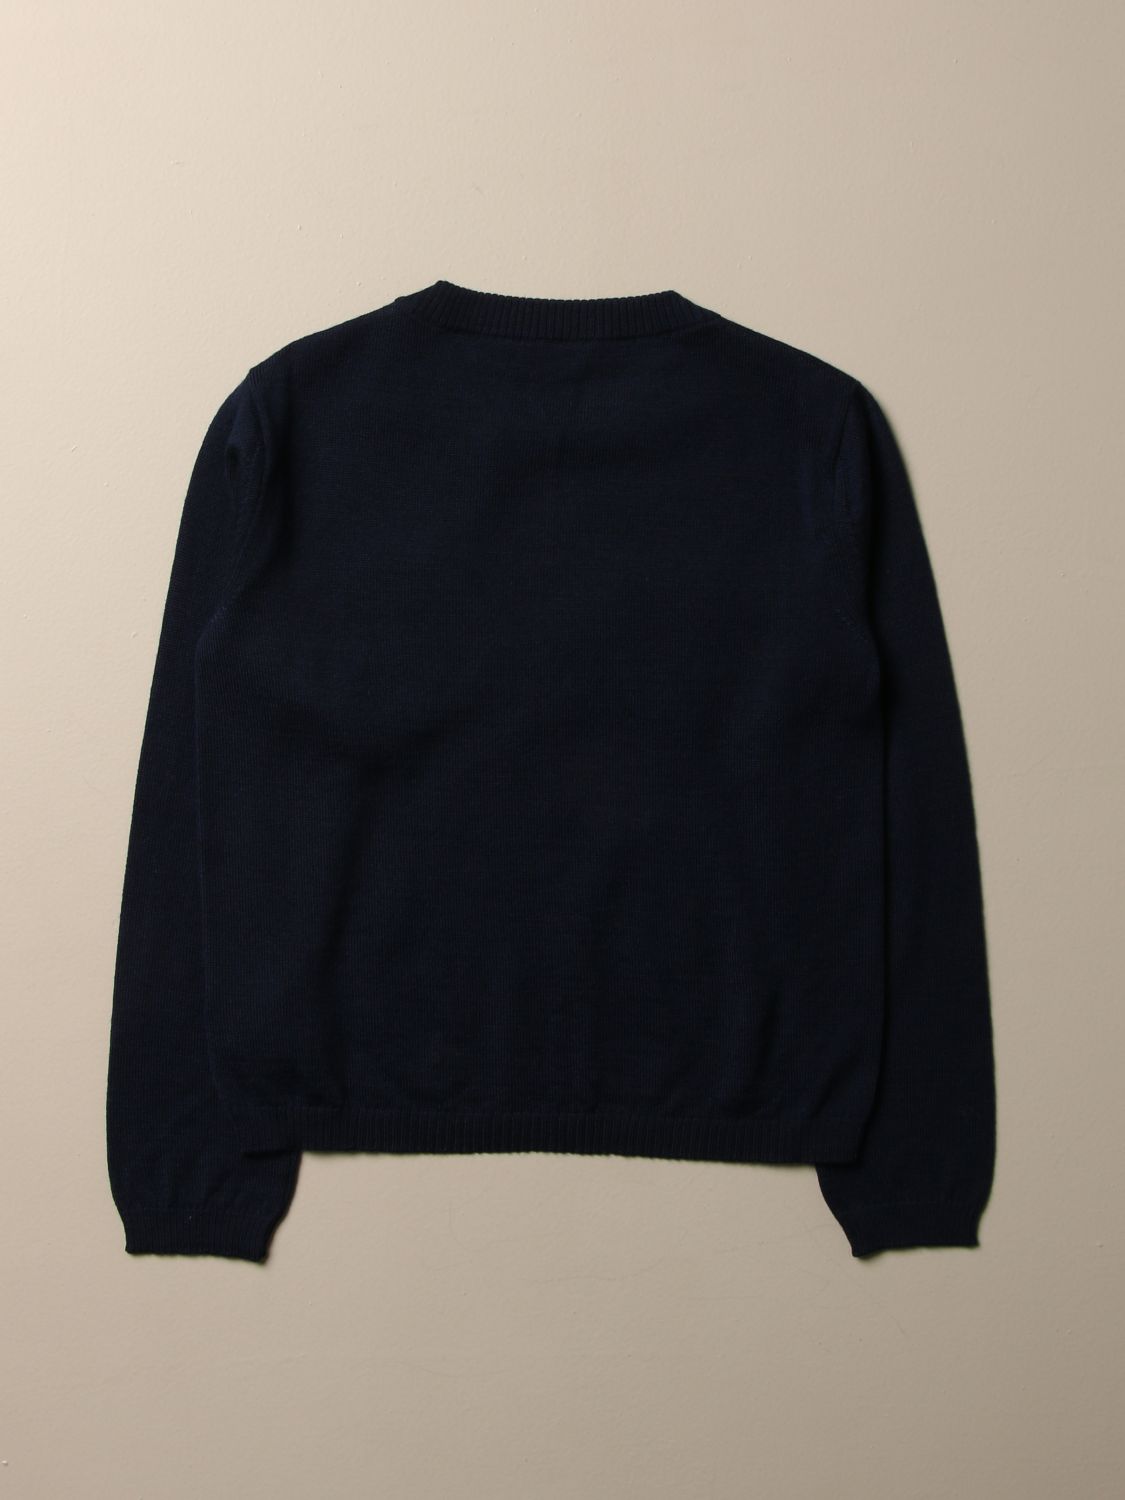 d&g sweater